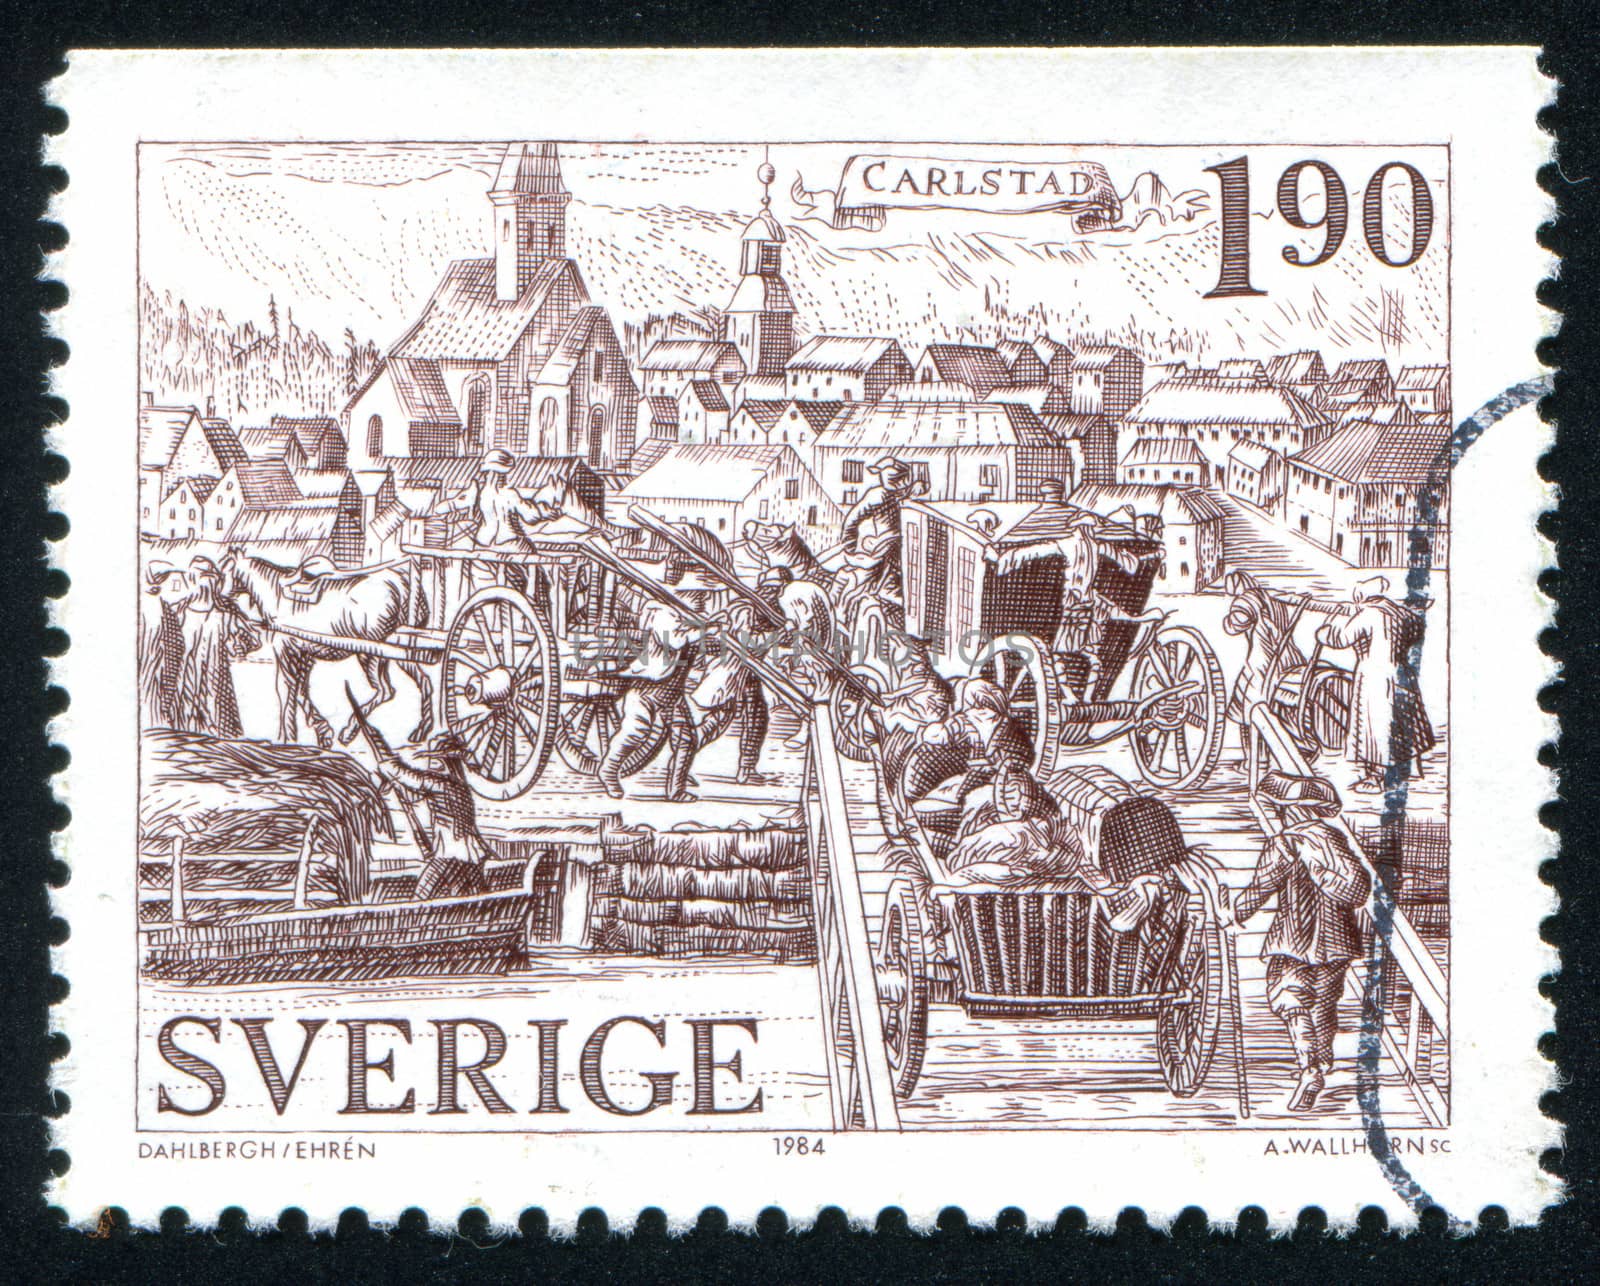 SWEDEN - CIRCA 1984: stamp printed by Sweden, shows Karlstad, circa 1984